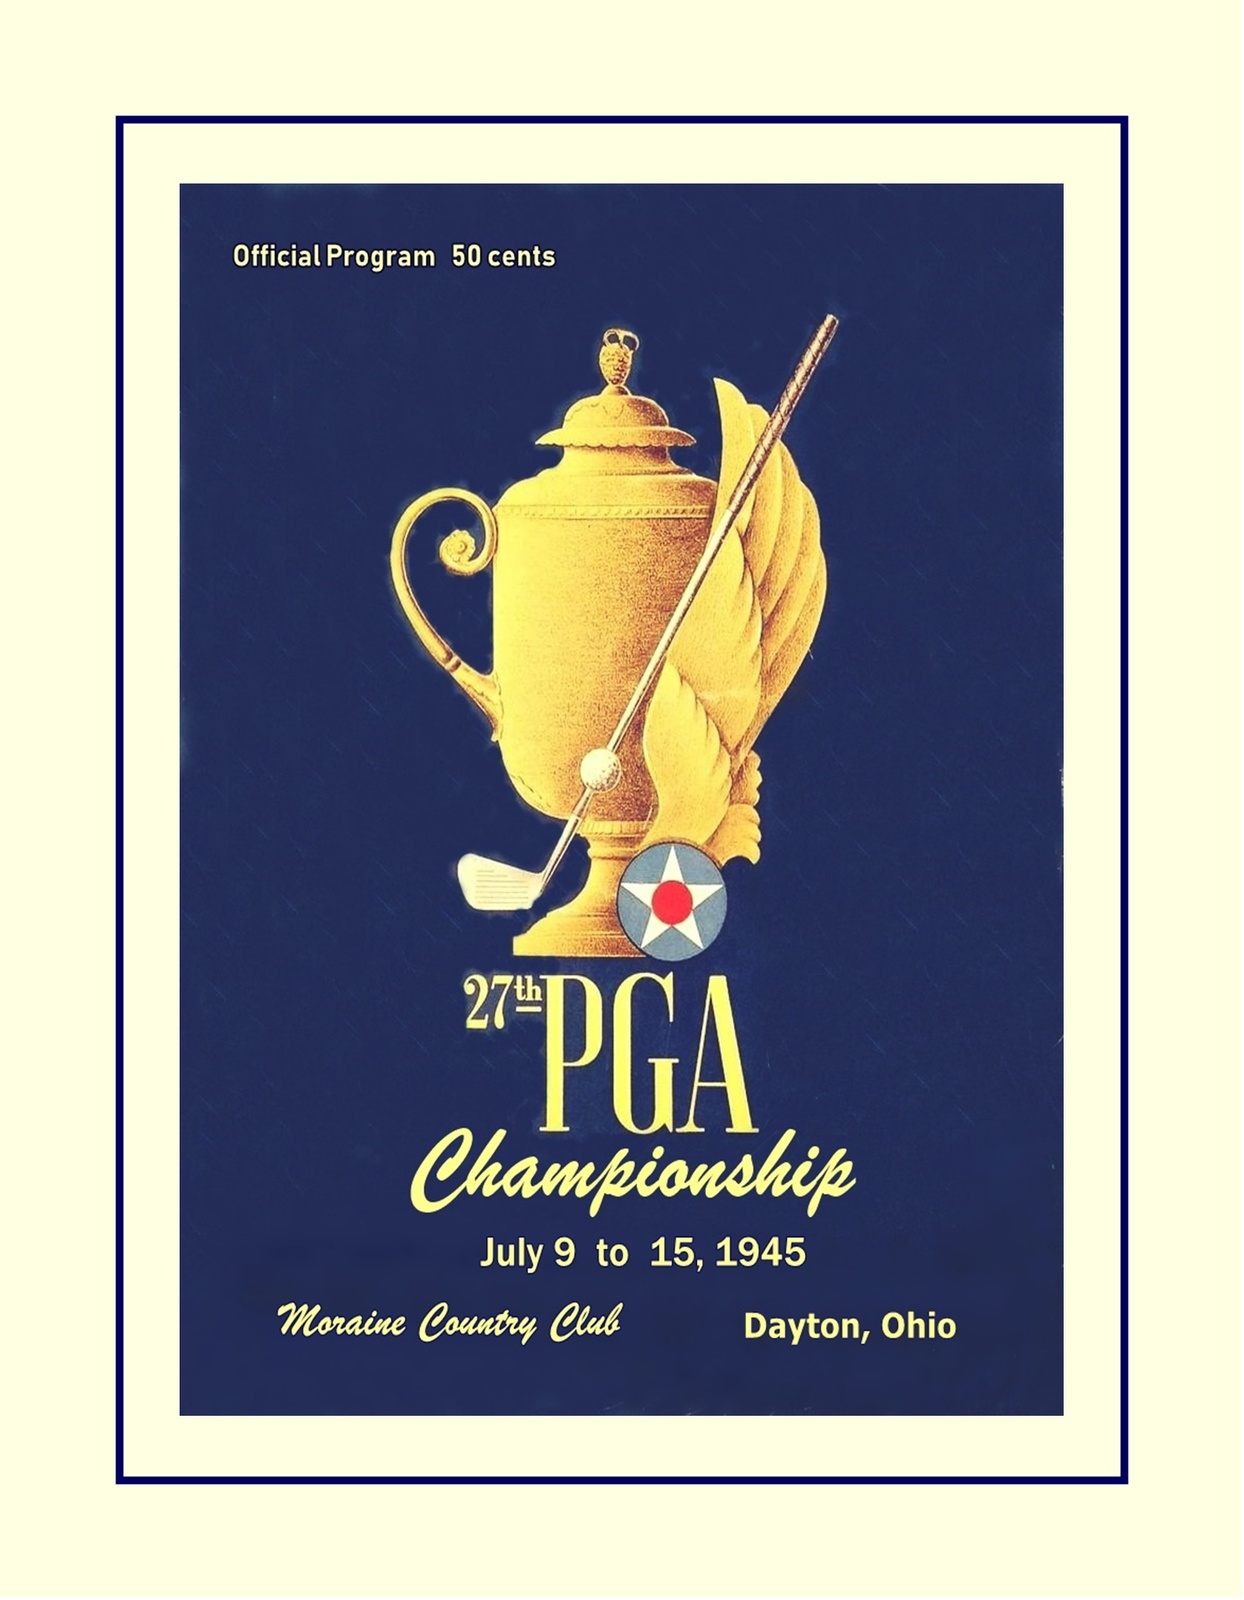 Rare 1945 PGA Champion Golf Poster, Unique Golfer Gift - $21.99 - $39.99